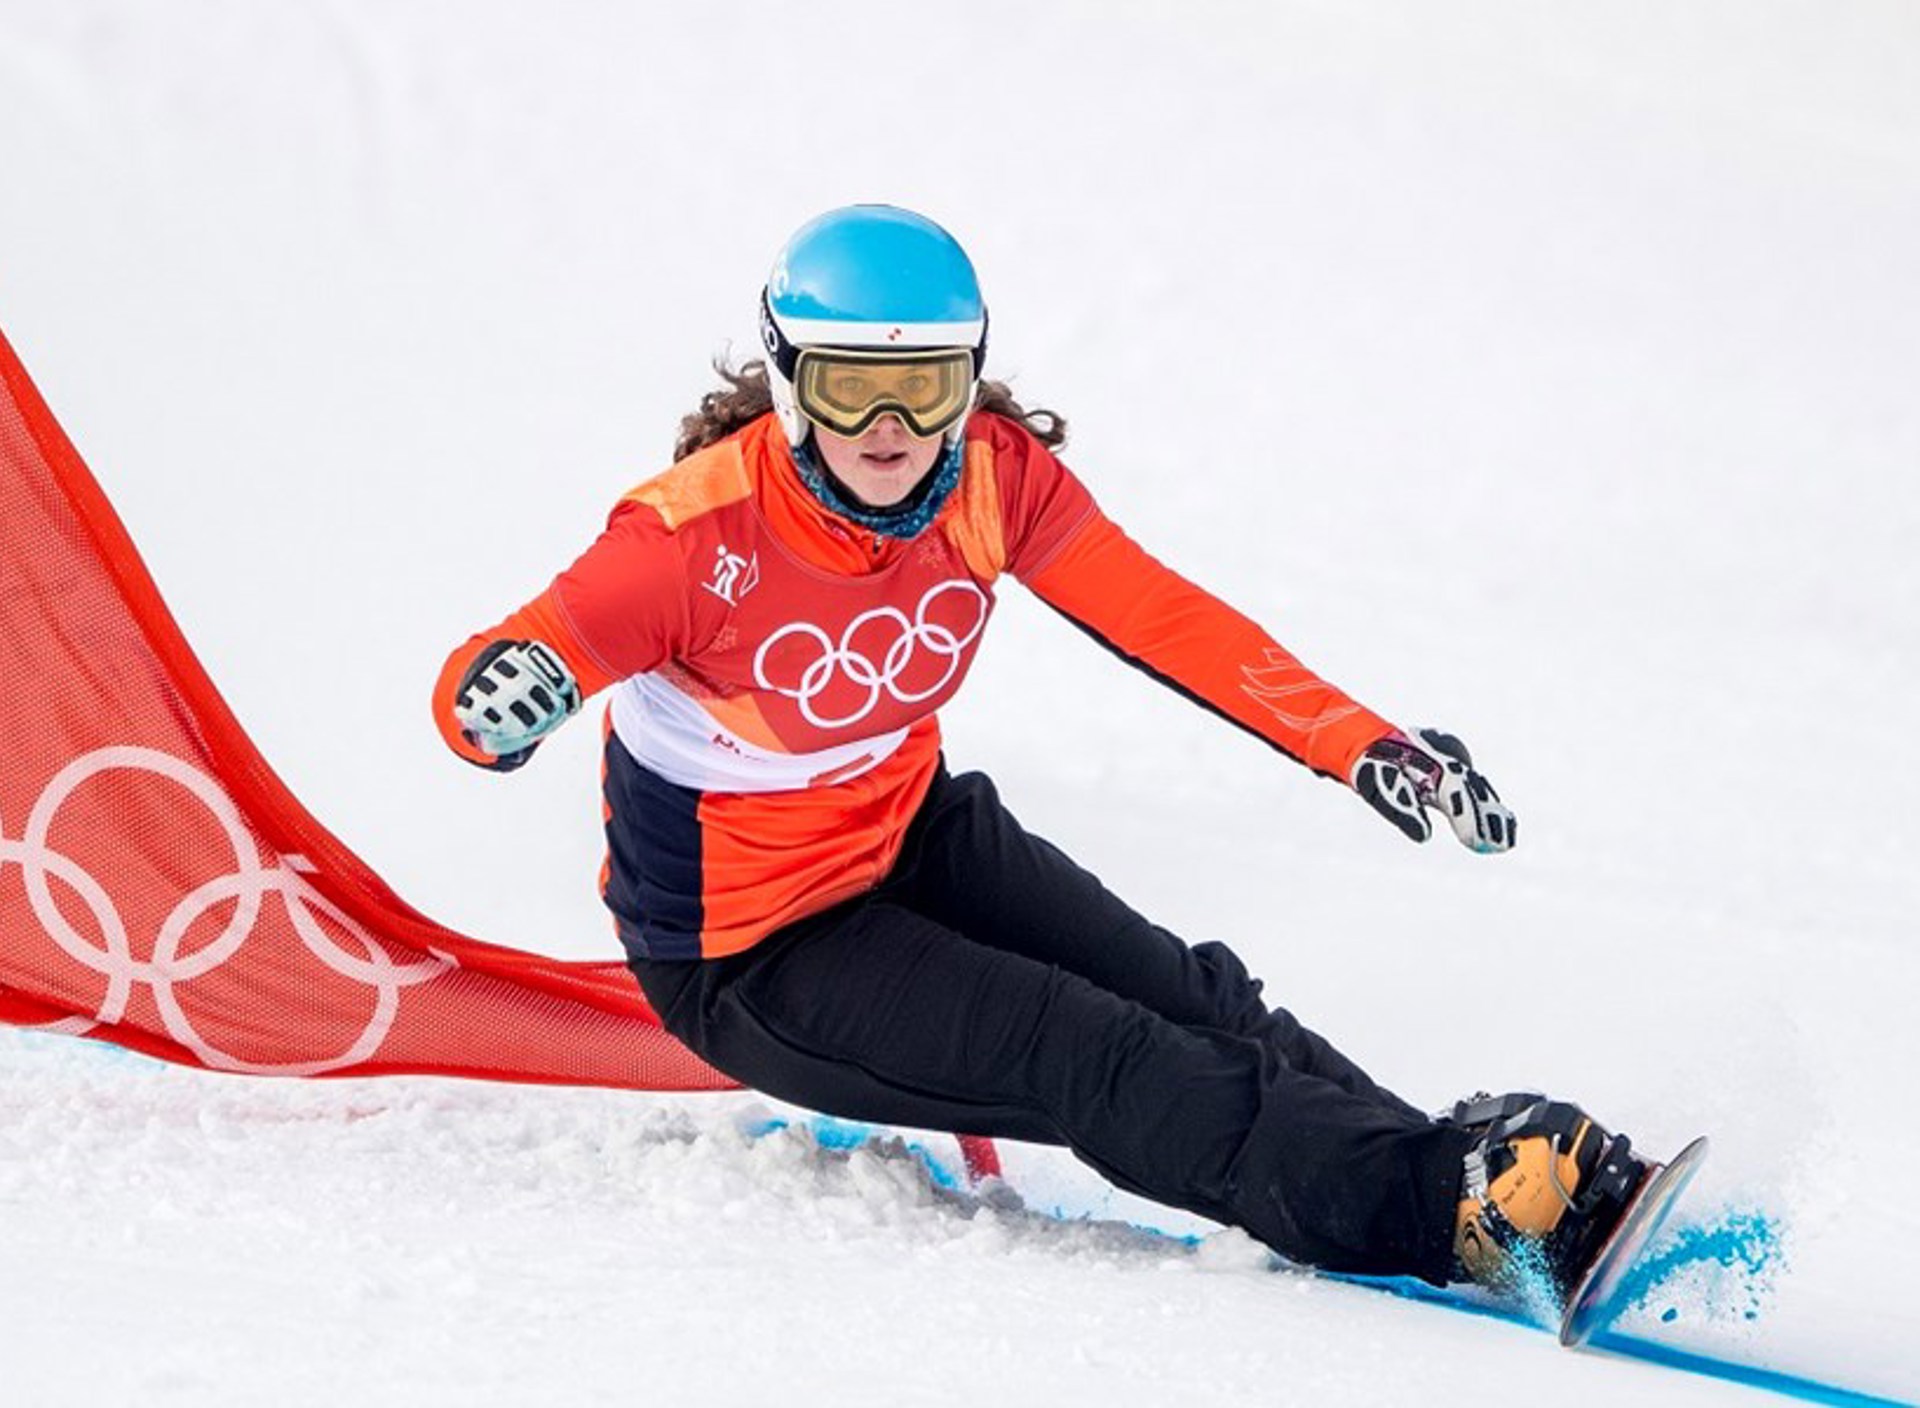 Michelle Dekker Pyeongchang 2018 ORANGE PICTURES